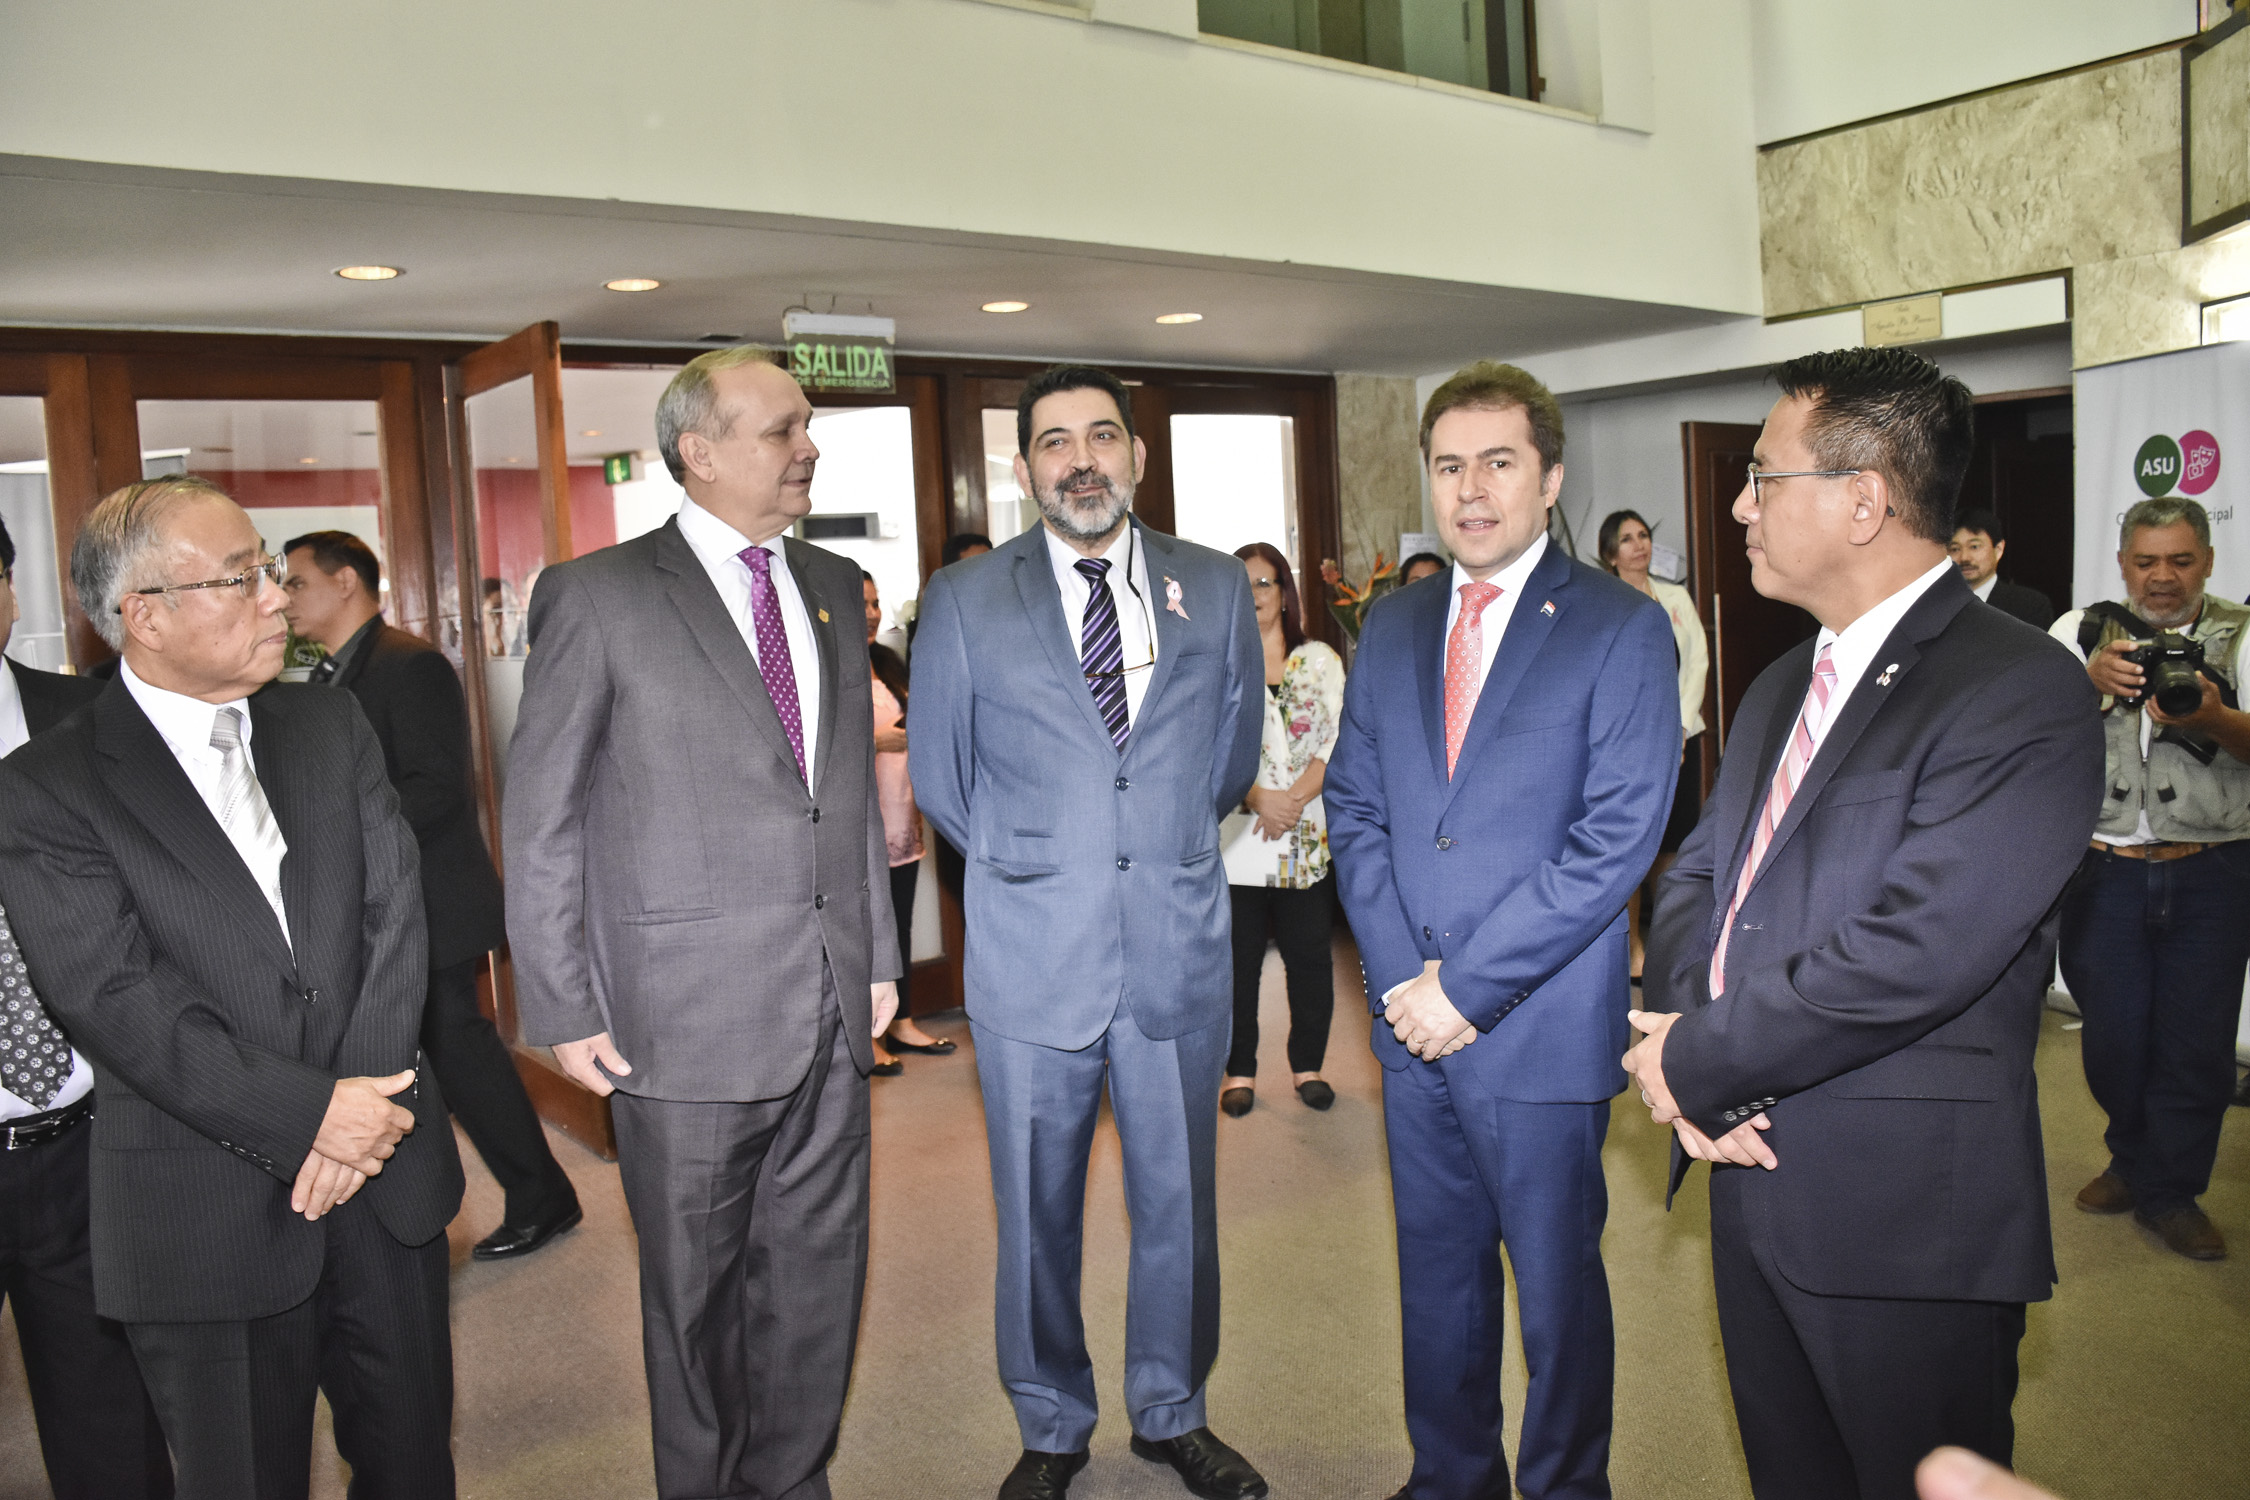 El Canciller destacó y agradeció la cooperación brindada por el Gobierno del Japón para el desarrollo del Paraguay